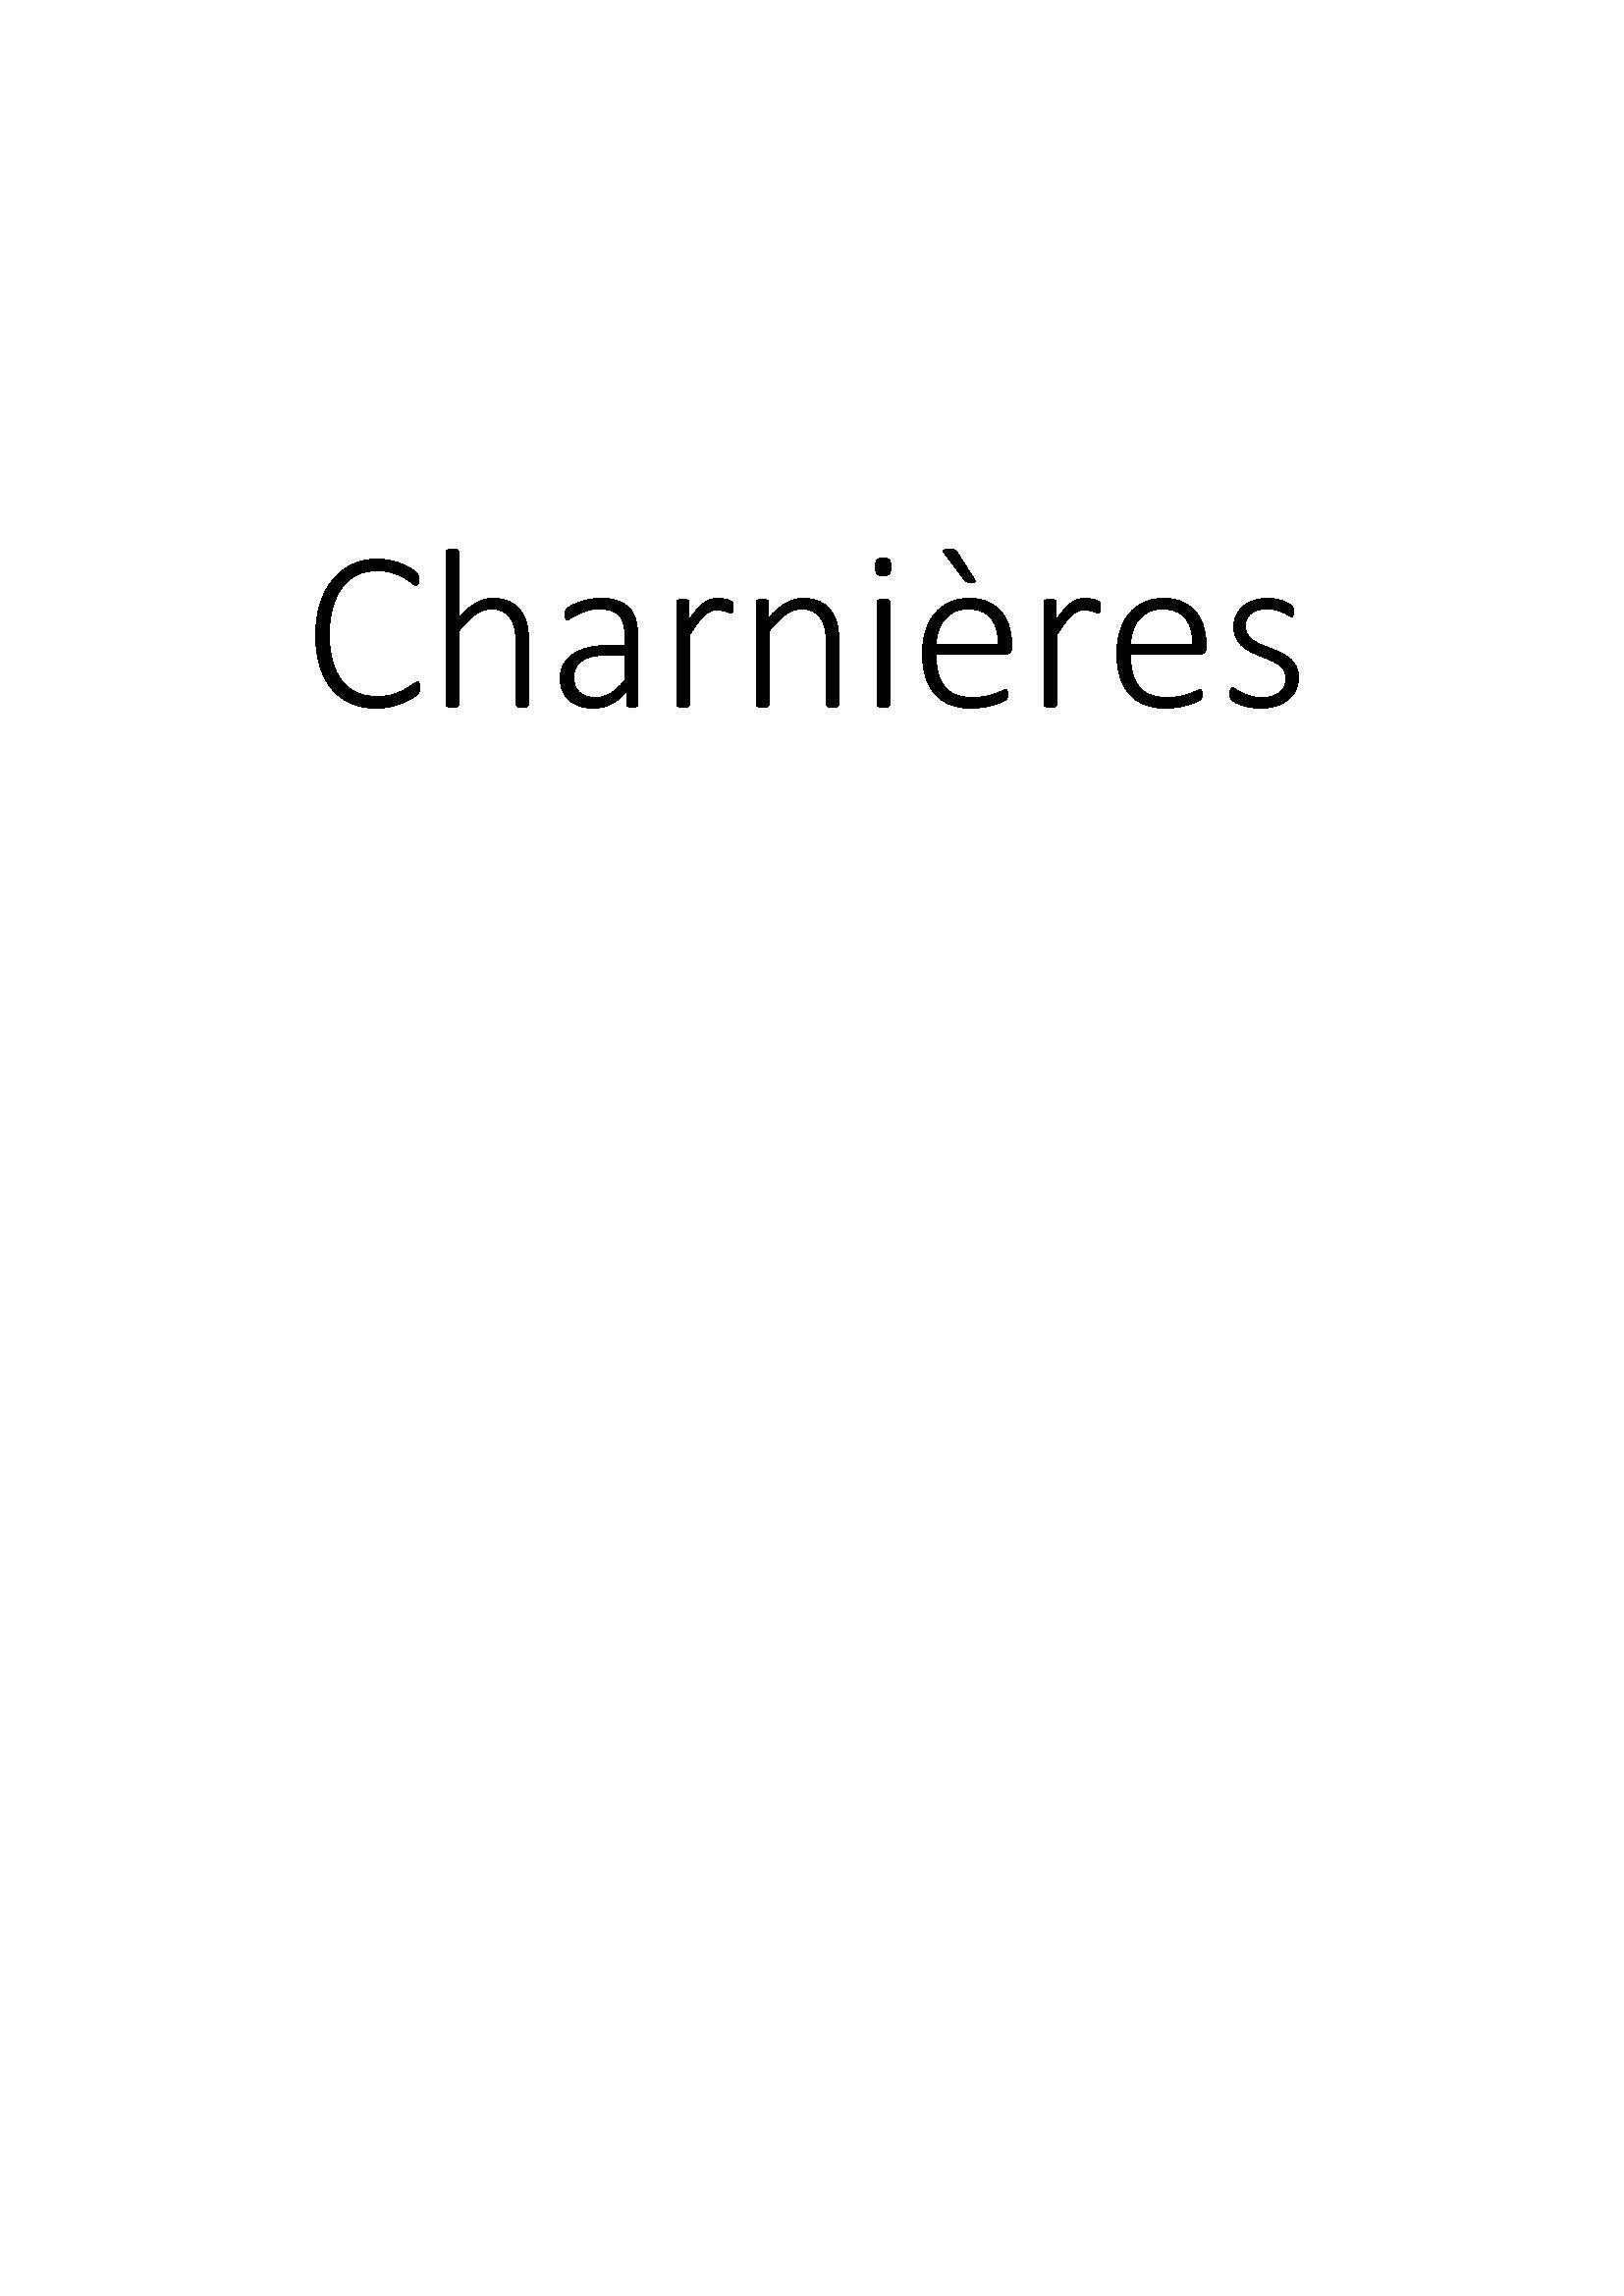 Charnières clicktofournisseur.com